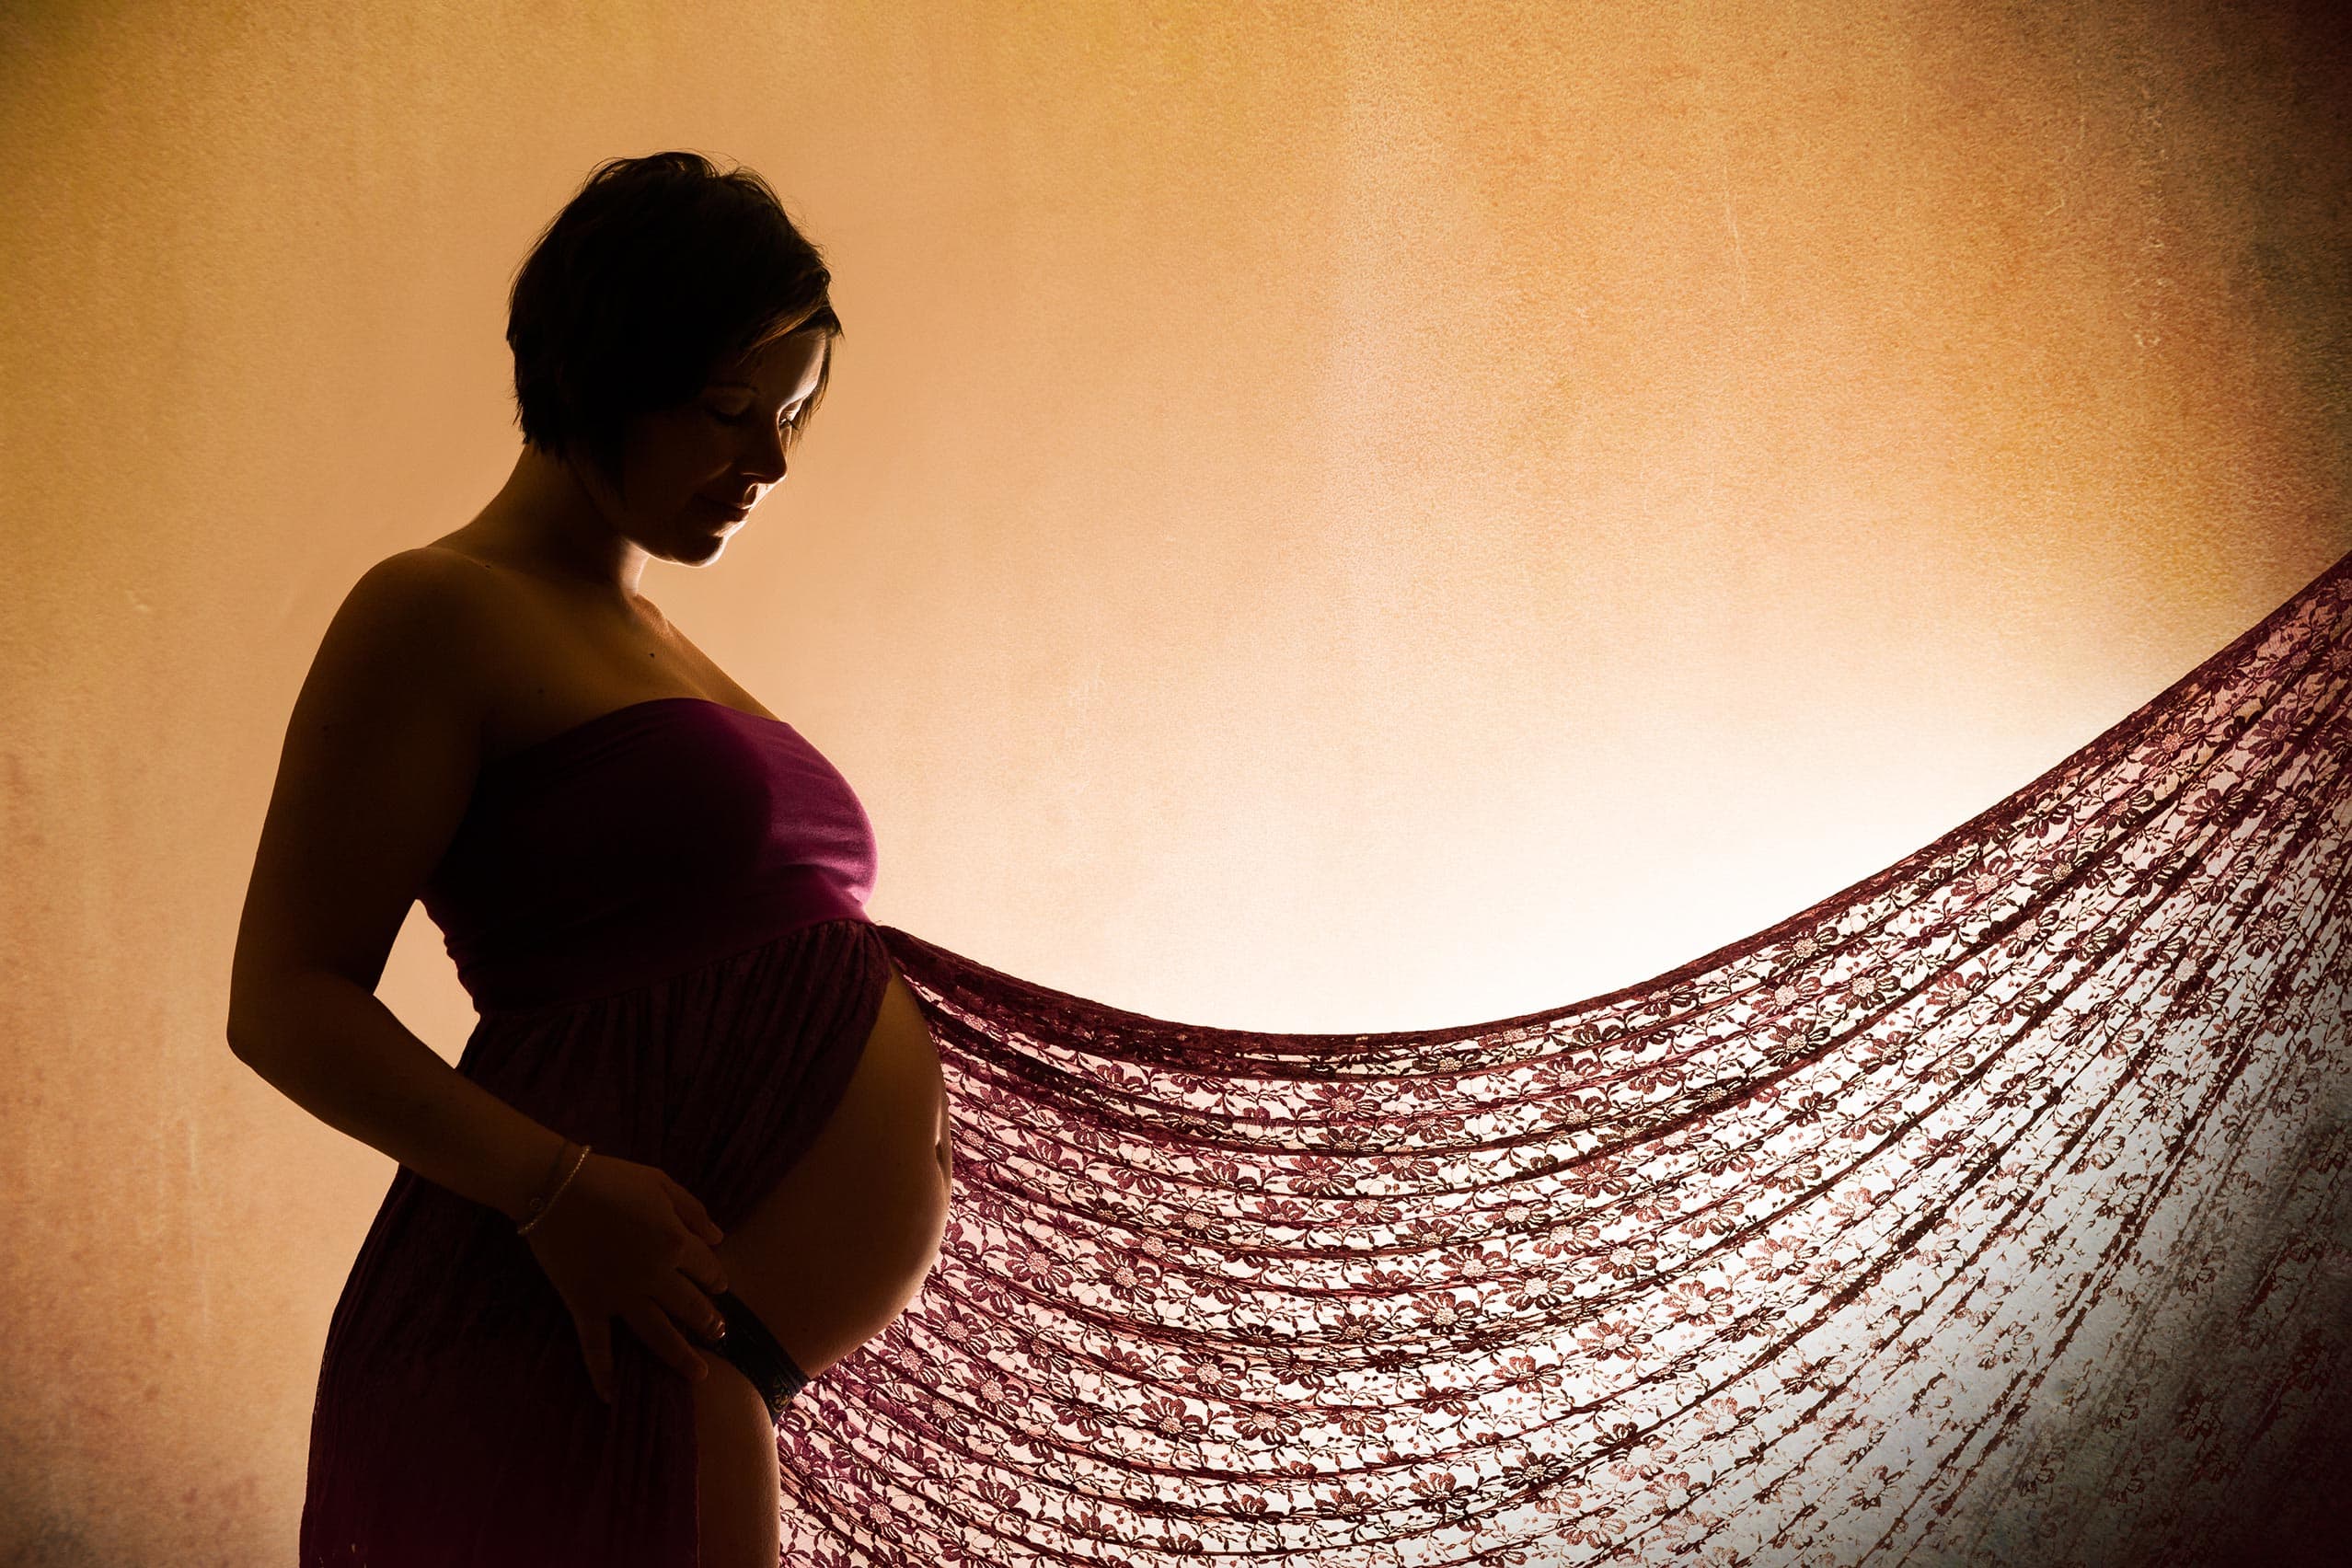 Schwangerschaft Fotografie Monika Kessler aus Vorarlberg zeigt Babybauchfotos